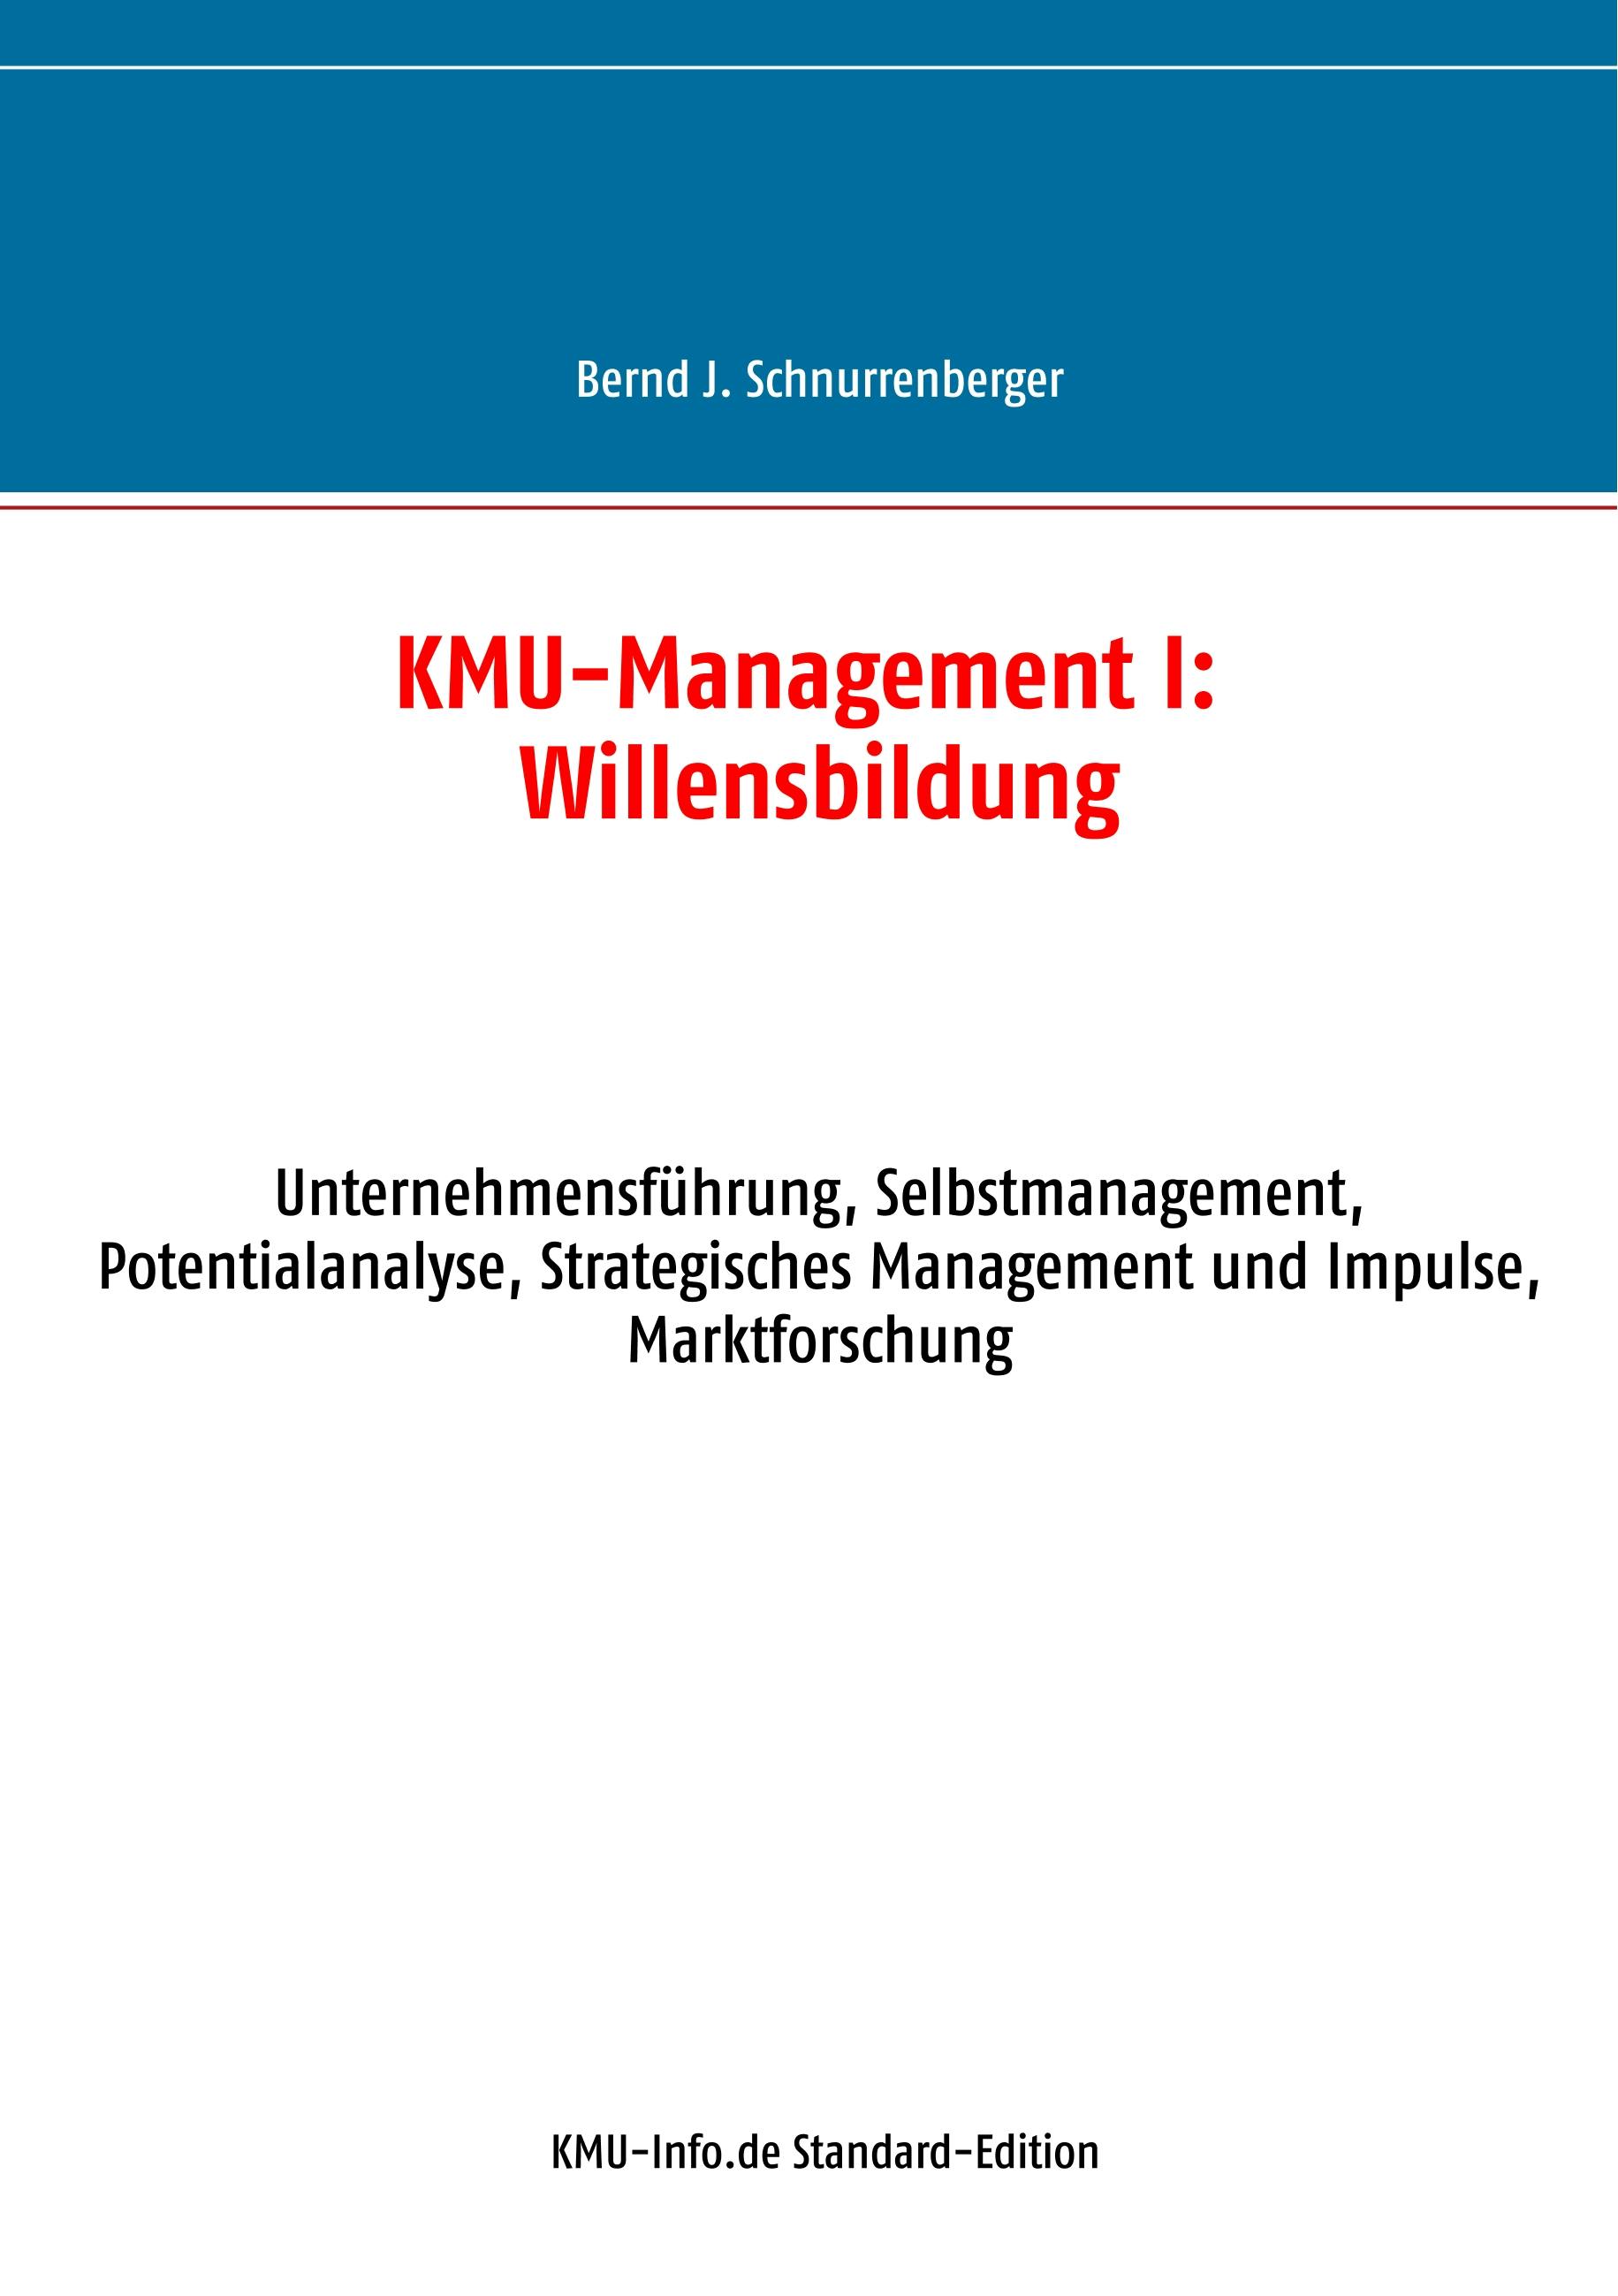 KMU-Management I: Willensbildung - Bernd J. Schnurrenberger